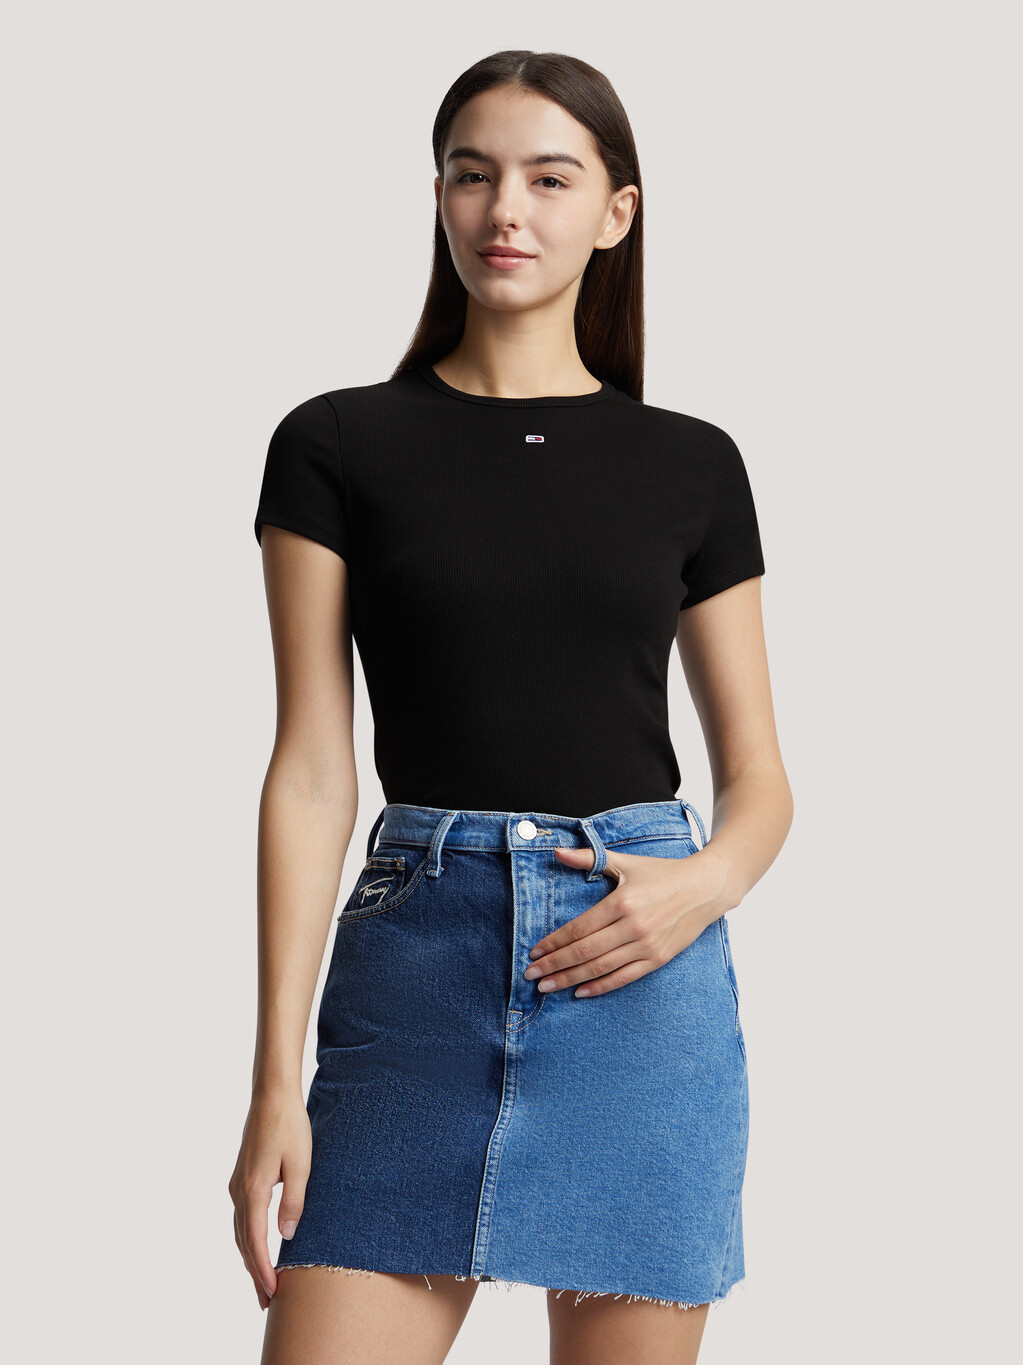 Essential Rib Knit Slim T-Shirt, Black, hi-res